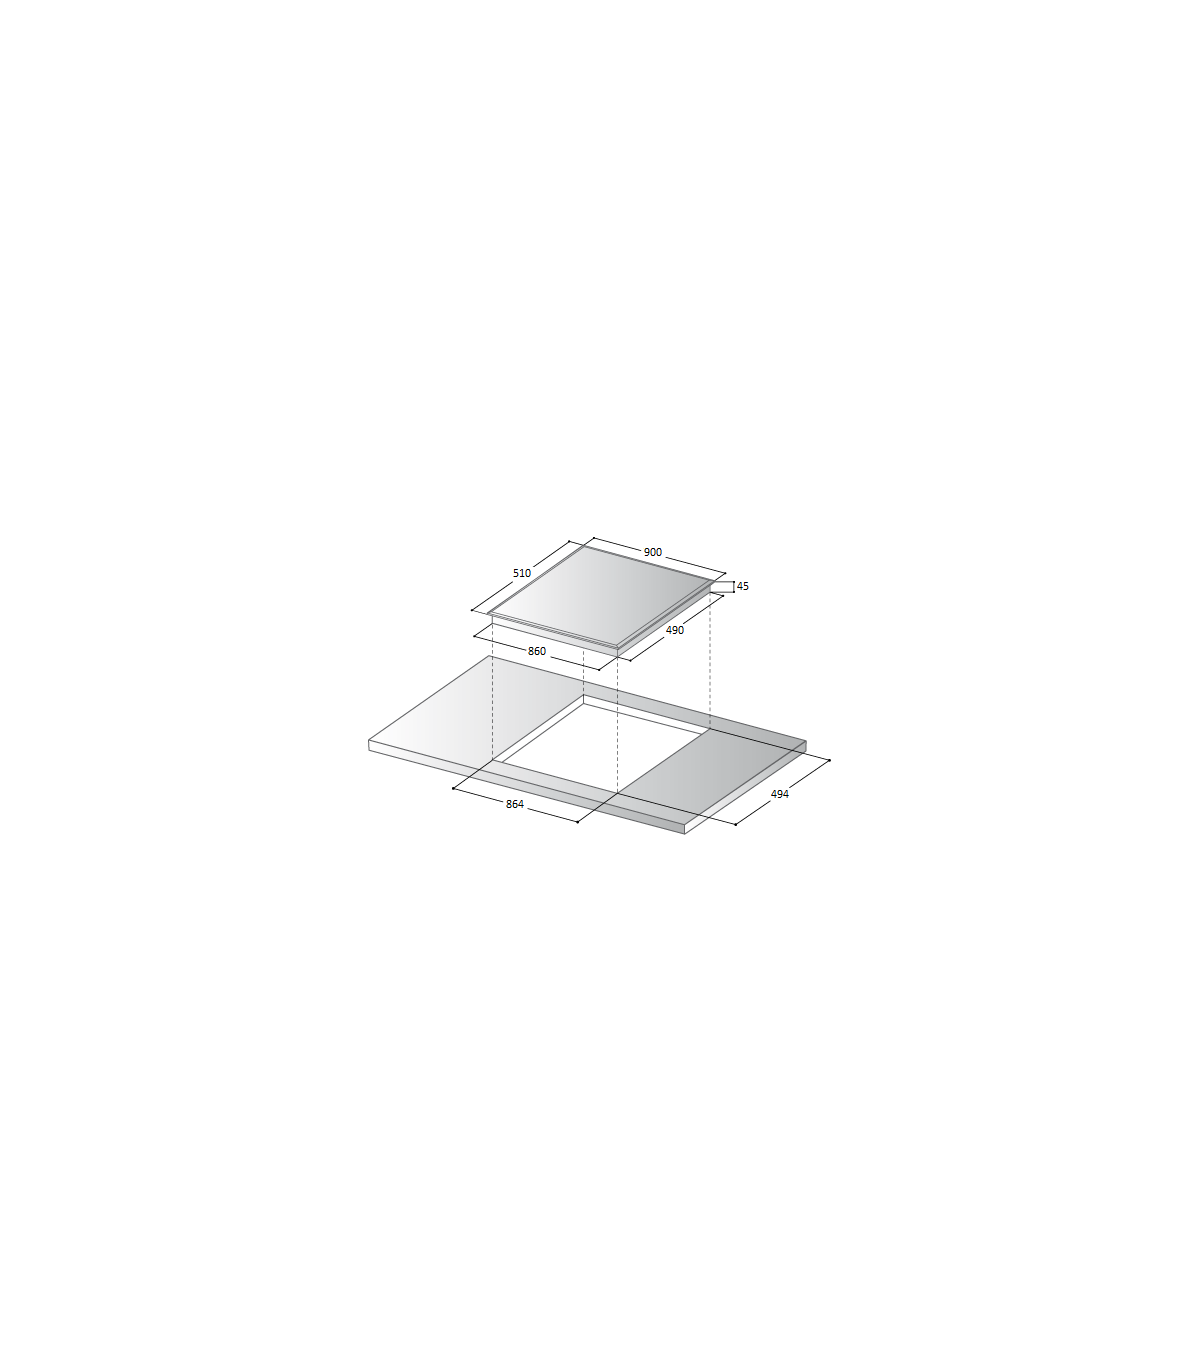 Plaque gaz 5 feux encastrable - Klarstein - 90 cm - tables de cuisson  vitrocéramique - plaque de cuisson gaz - noir